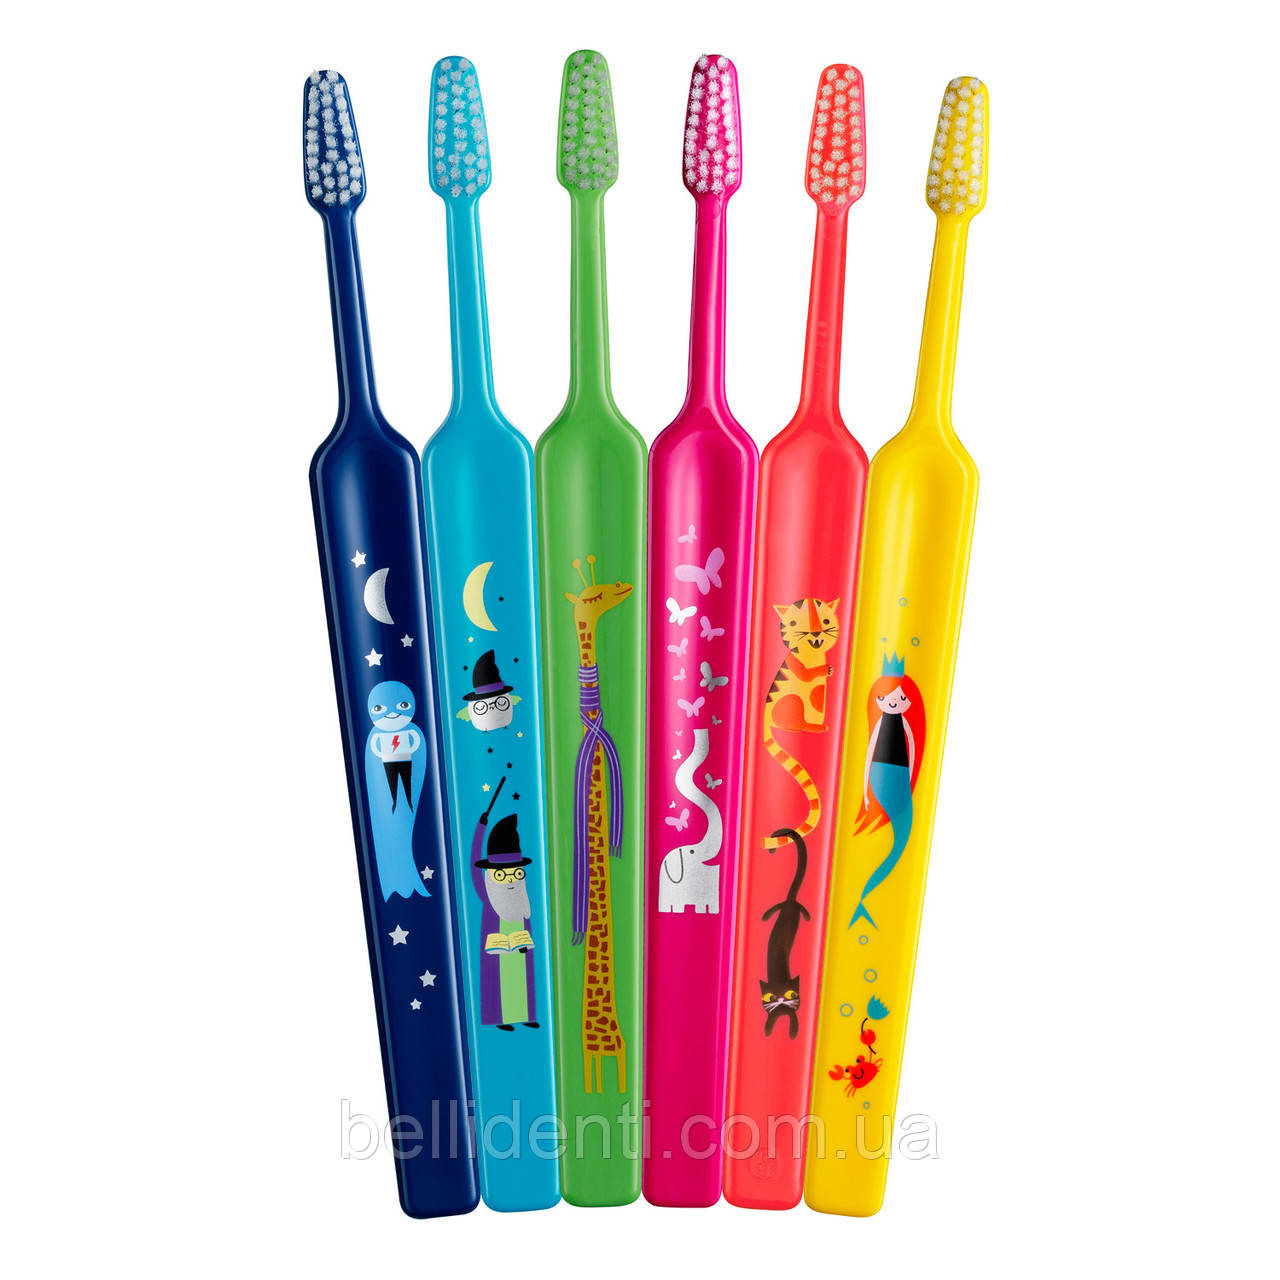 Дитяча зубна щітка TePe Kids Soft (від 3-х років)